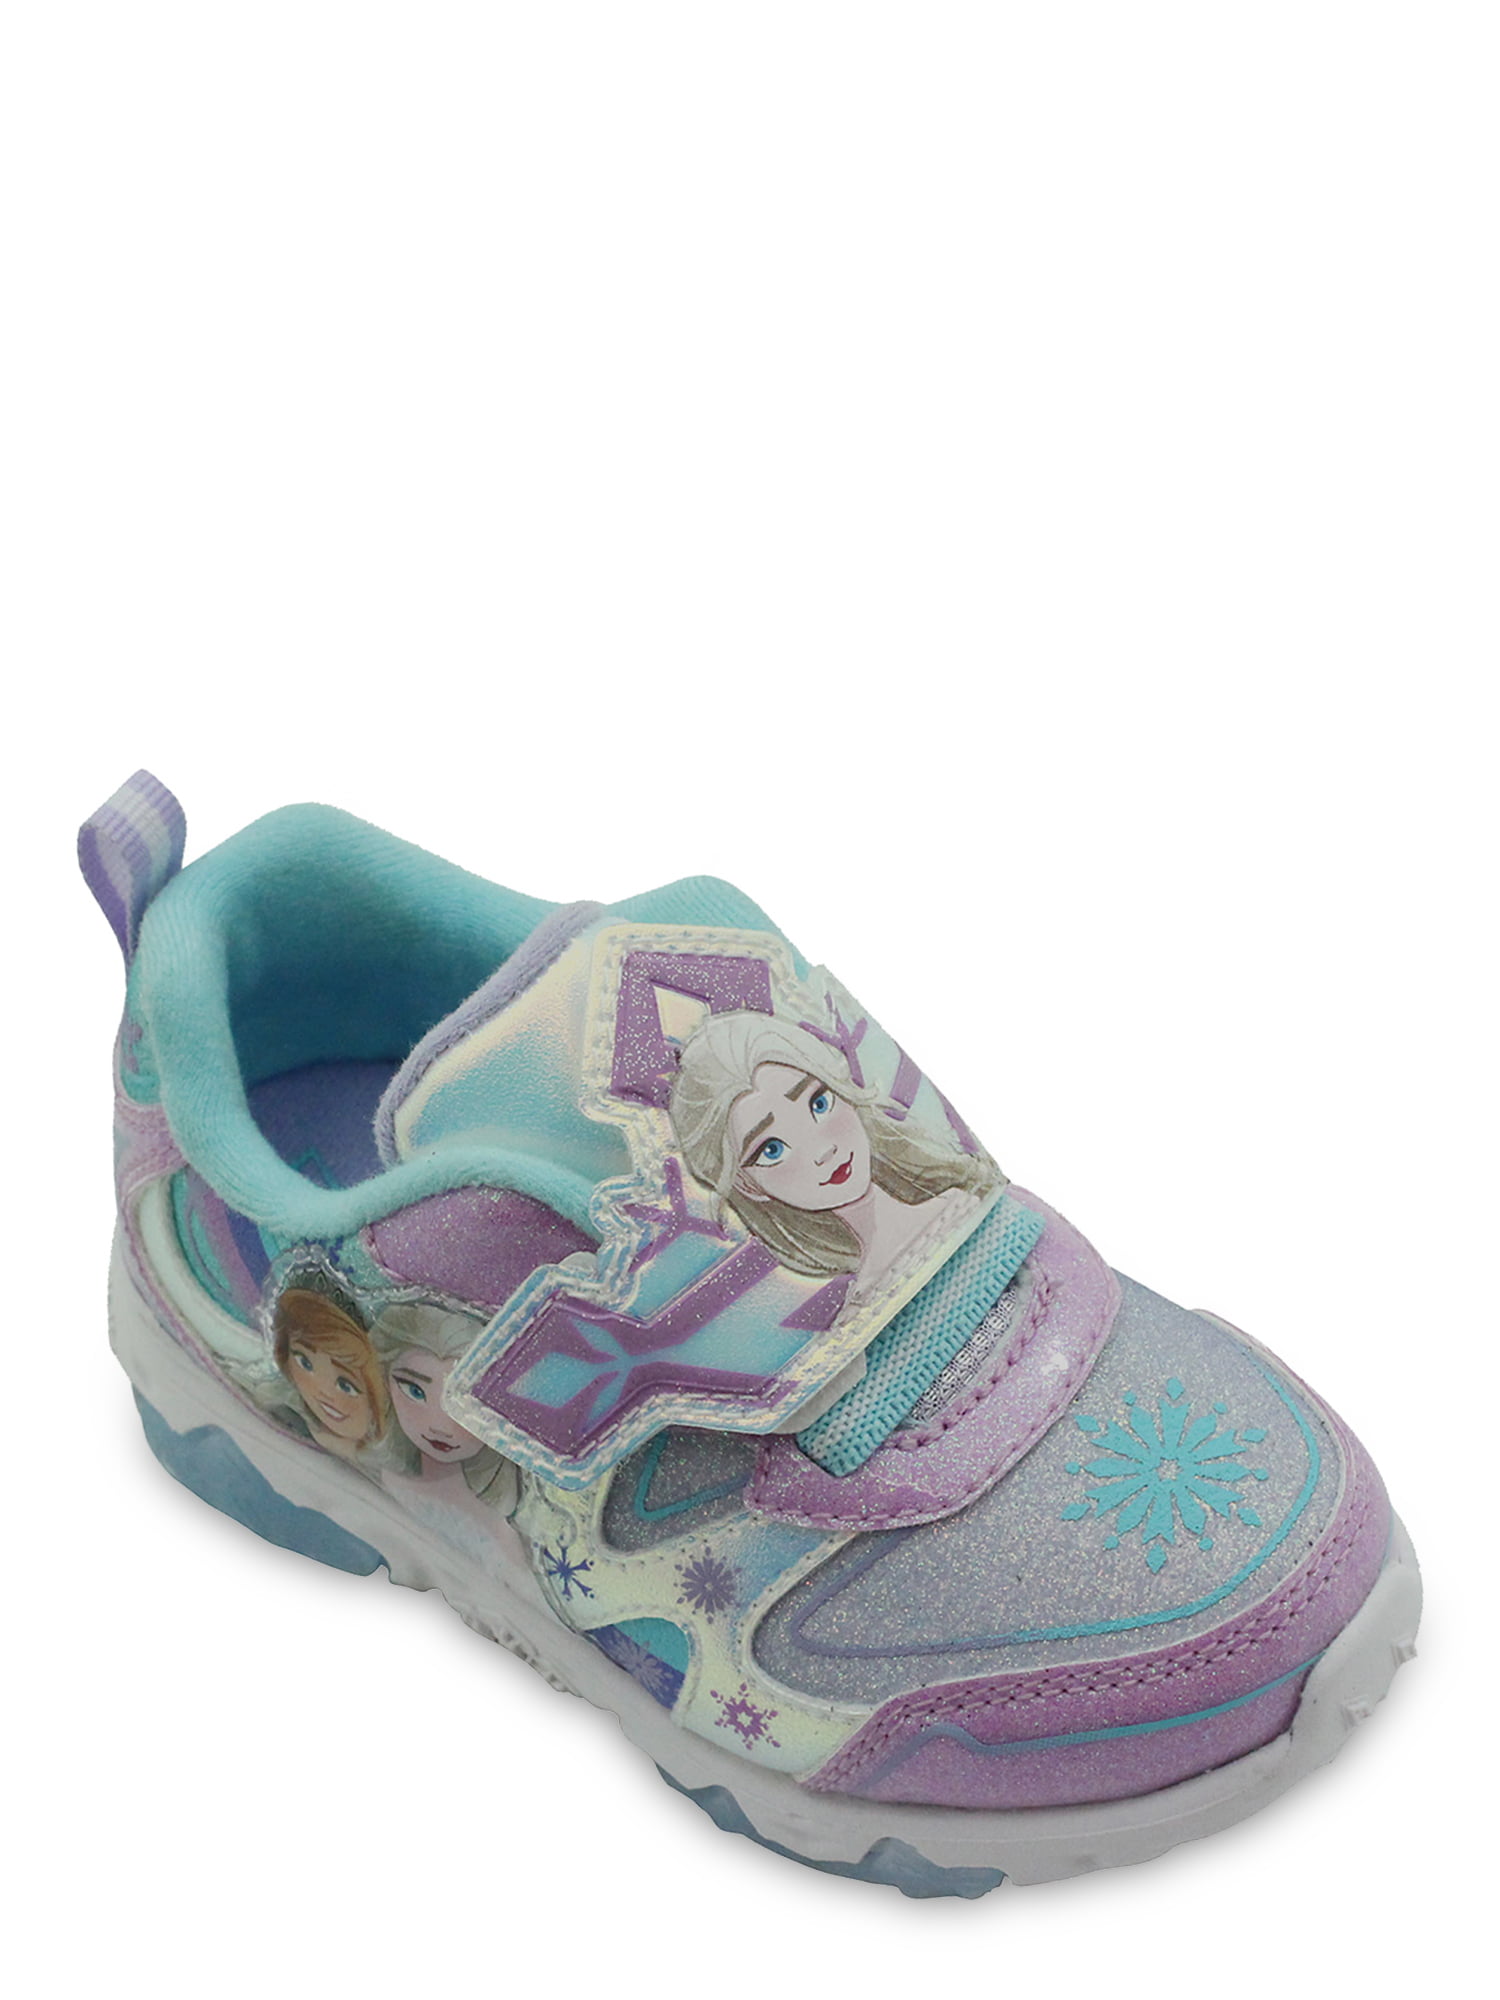 Size 13/1 Disney Frozen Elsa's Light-Up Shoes Exclusive 